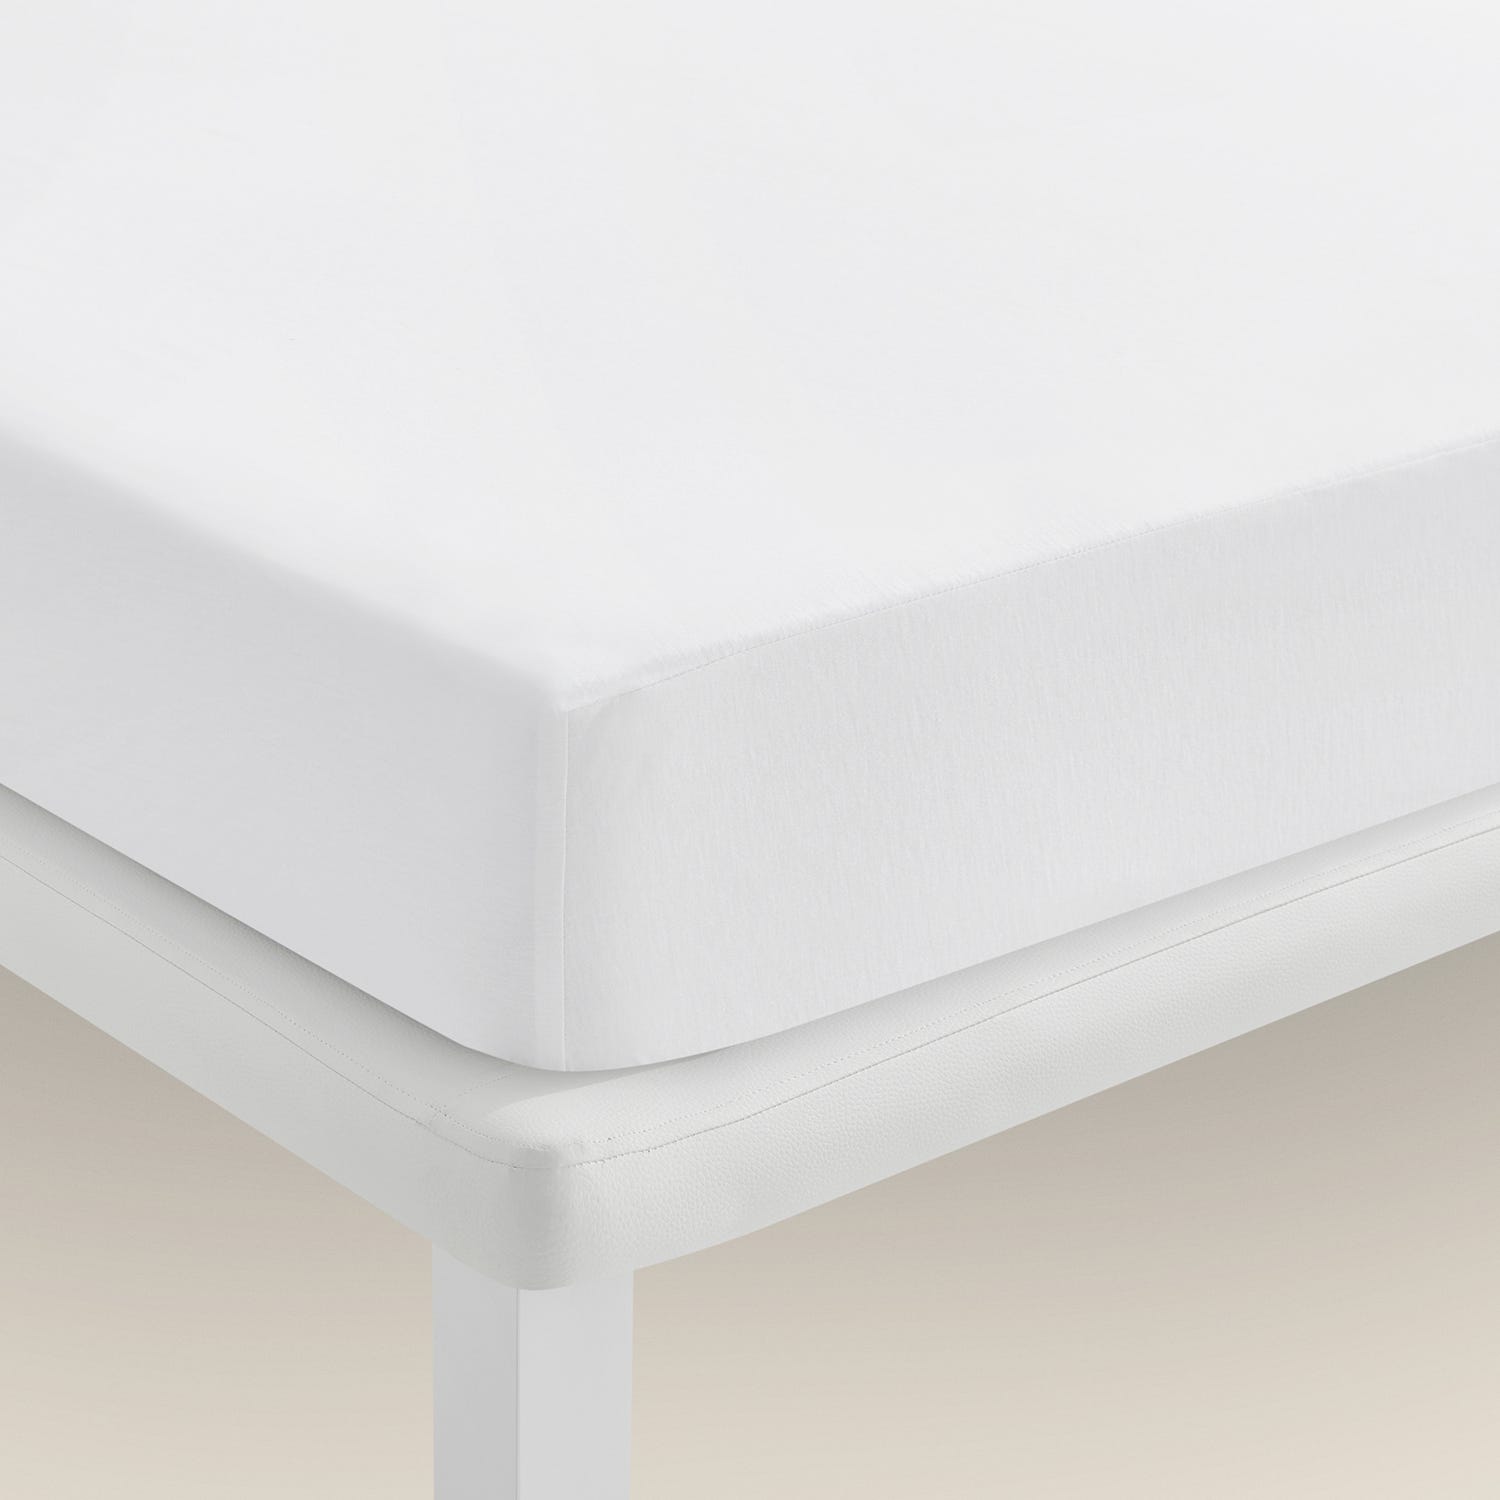 Cubre colchón y fundas de colchón, los mejores protectores - IKEA